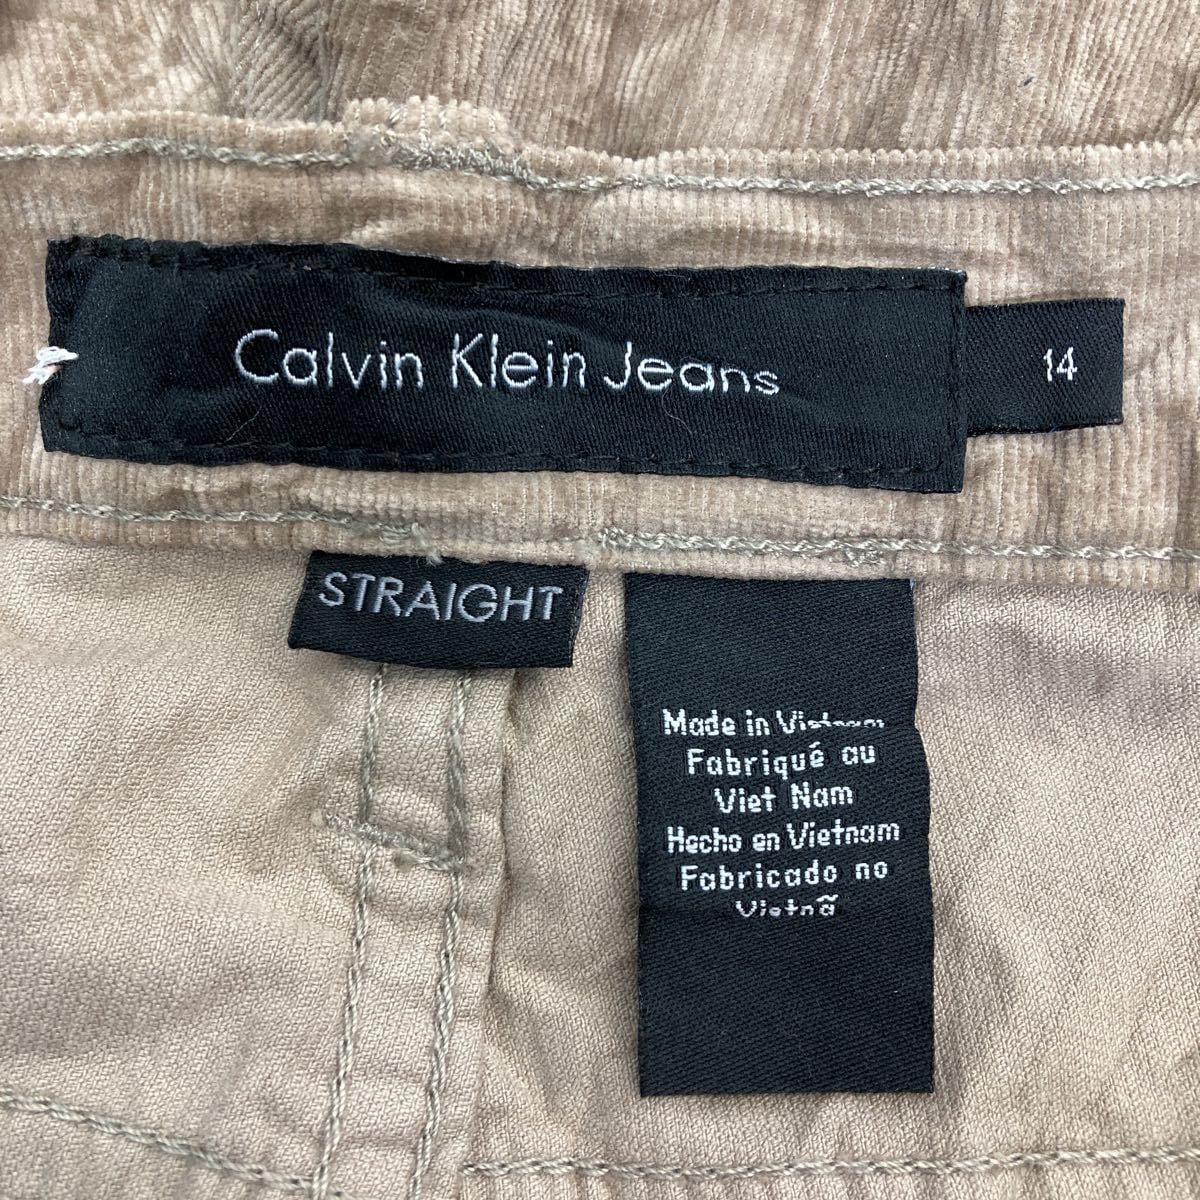 Calvin Klein Jeans コーデュロイパンツ W36 C カルバンクライン レディース ストレート ブラウンベージュ 古着卸 アメリカ仕入  2210-164